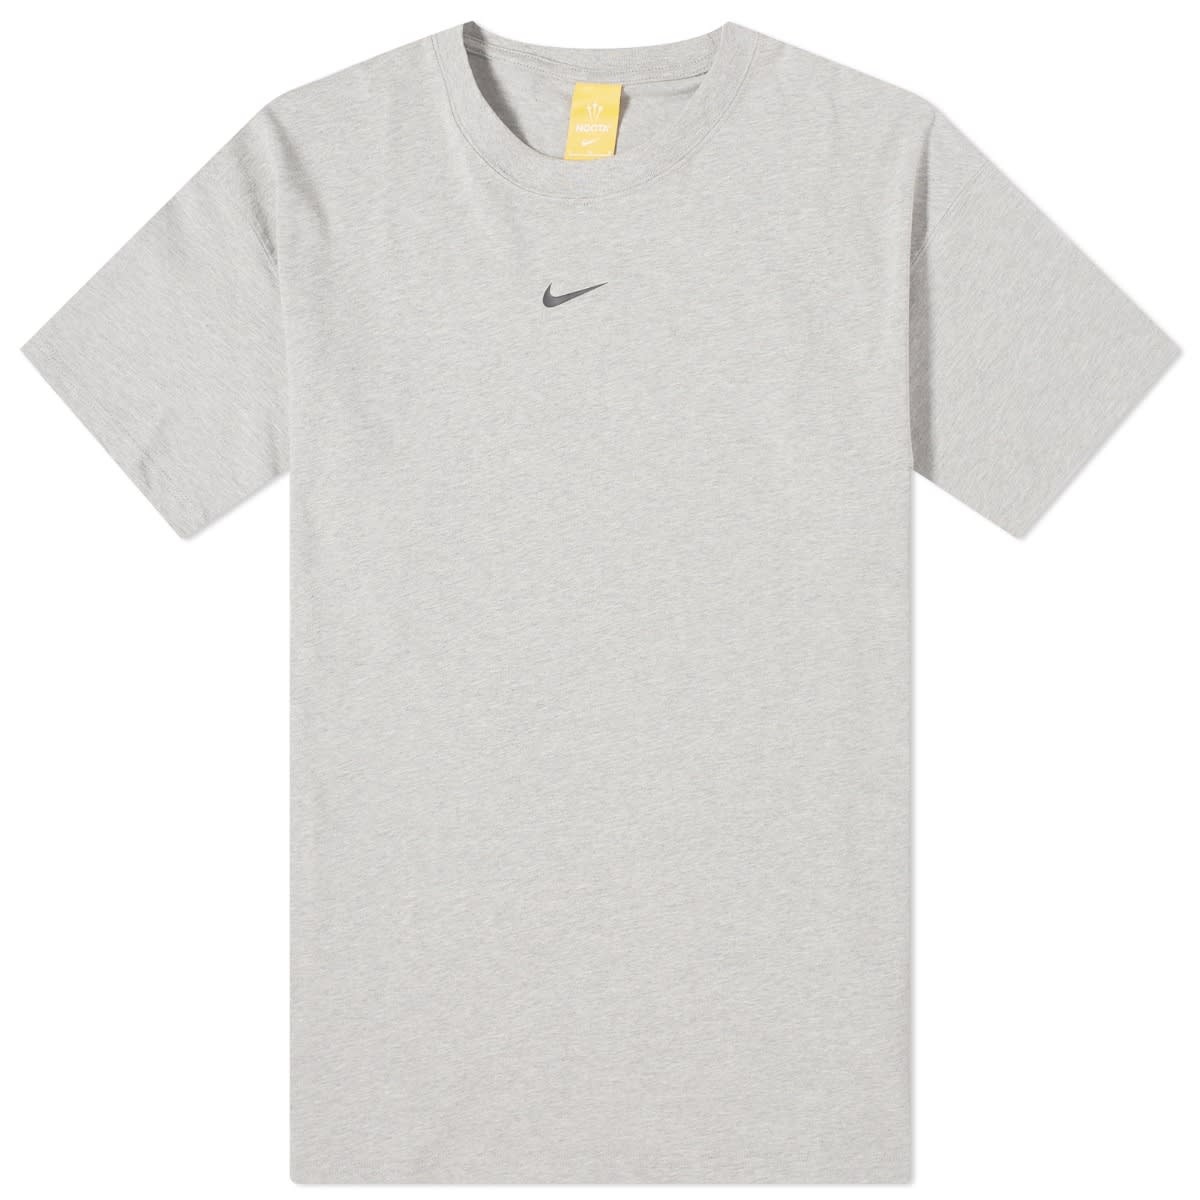 Nike x NOCTA Cardinal Stock T-shirt - 1